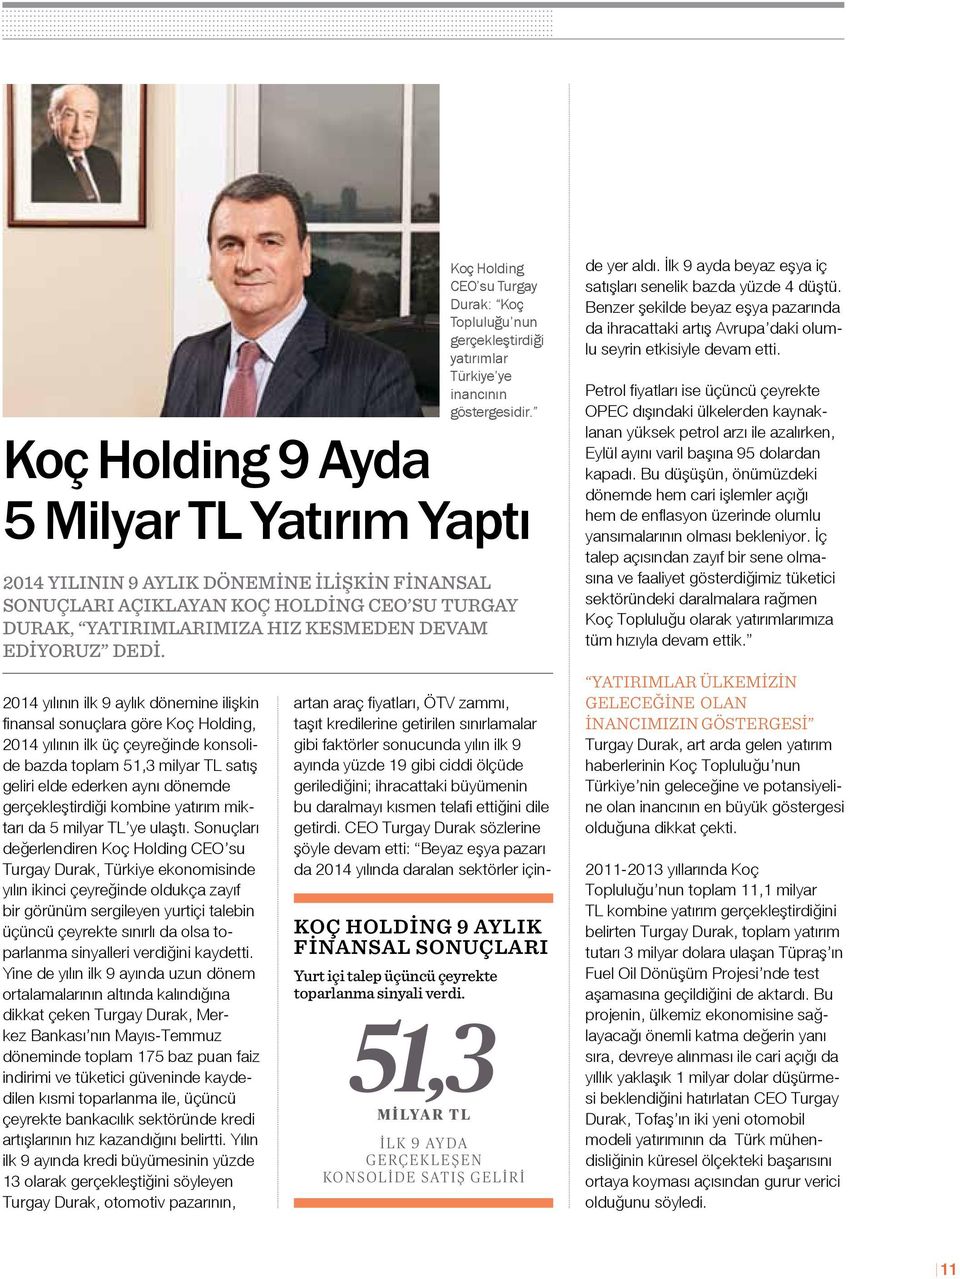 Sonuçları değerlendiren Koç Holding CEO su Turgay Durak, Türkiye ekonomisinde yılın ikinci çeyreğinde oldukça zayıf bir görünüm sergileyen yurtiçi talebin üçüncü çeyrekte sınırlı da olsa toparlanma